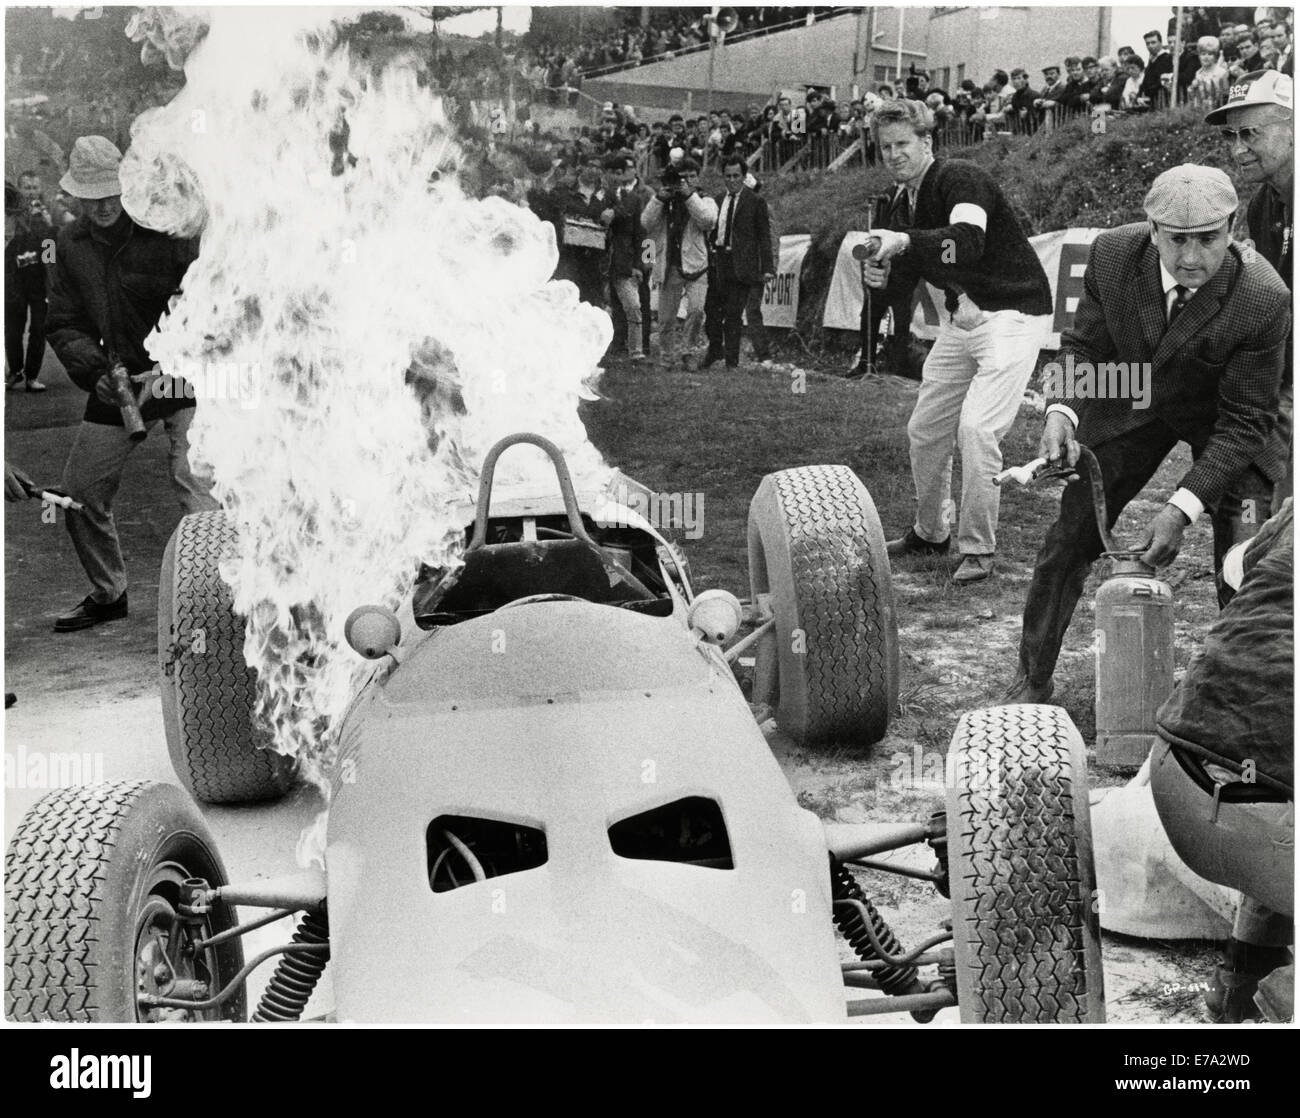 Techniker versuchen, die Flammen des brennenden Yamura Racer aus dem Film "Grand Prix", 1966 zu löschen Stockfoto